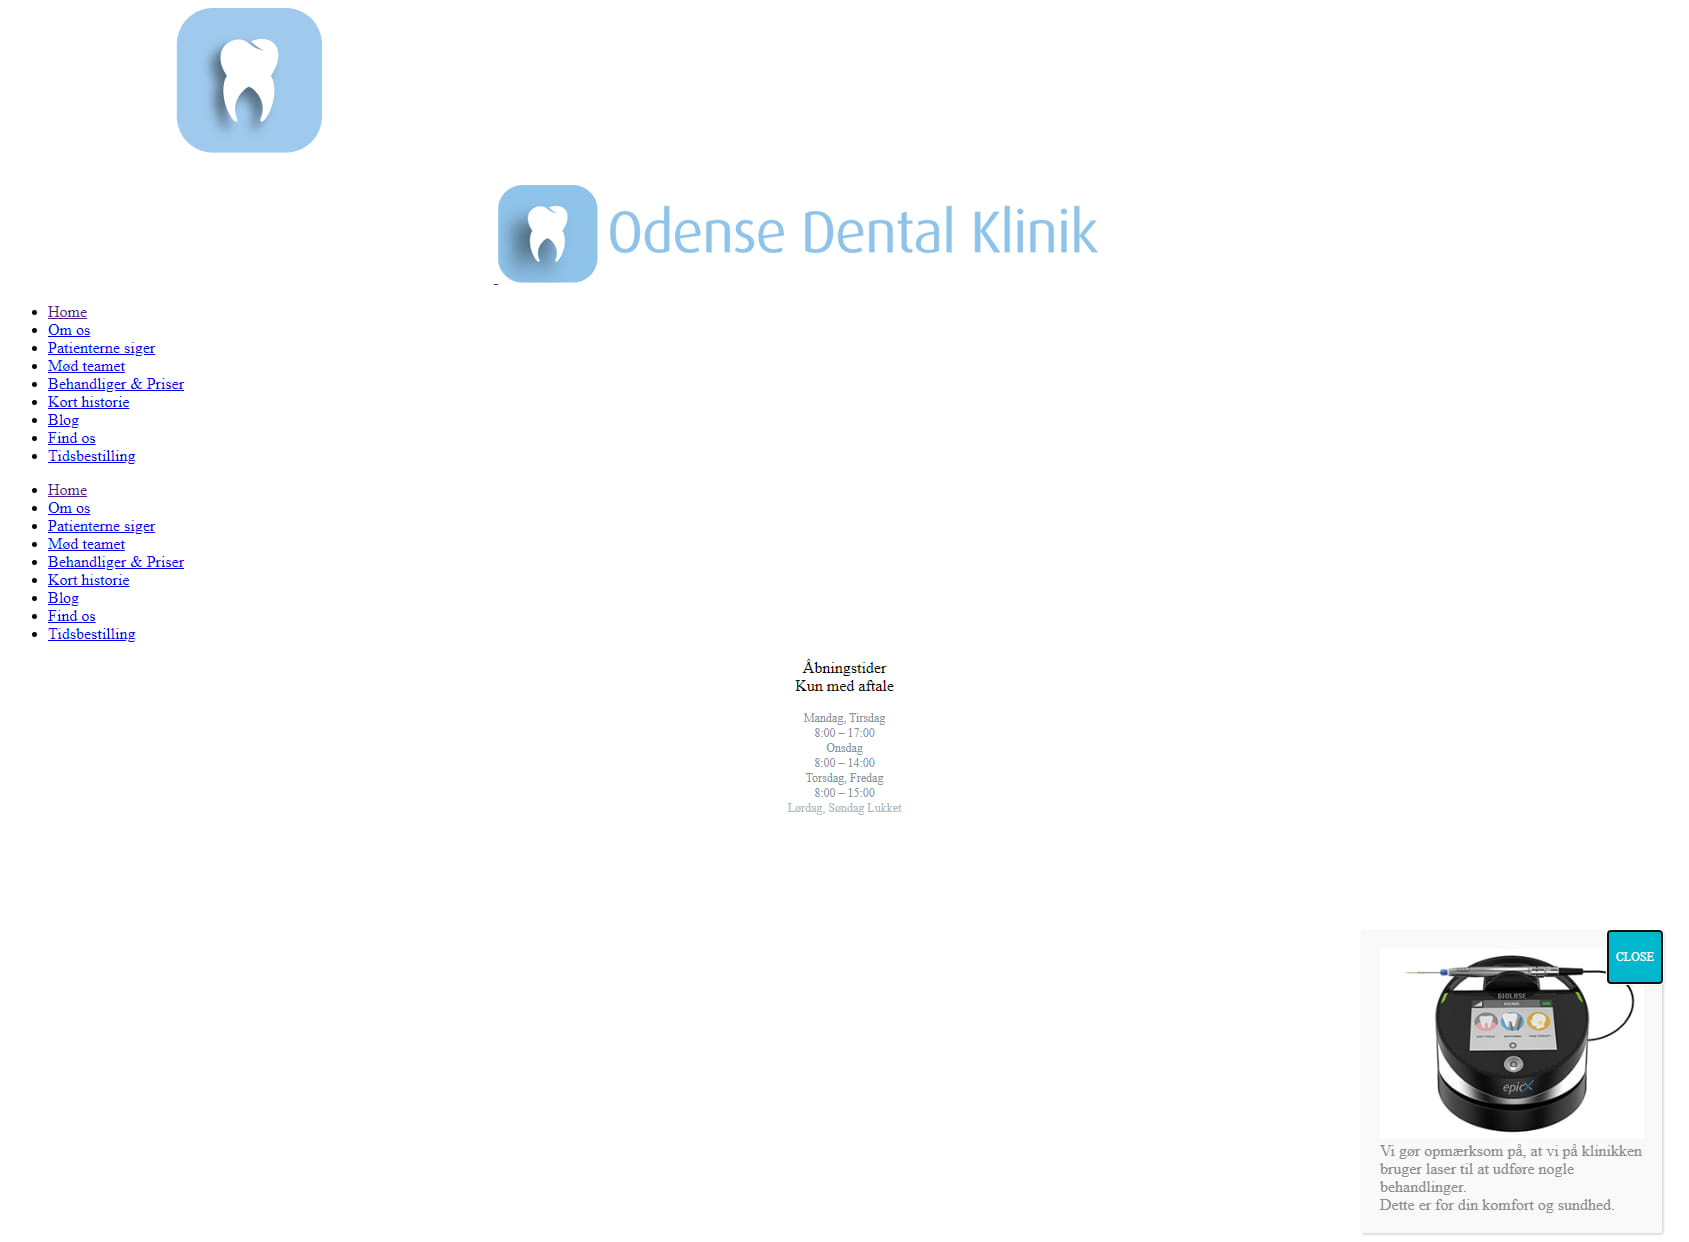 Odense Dental Klinik